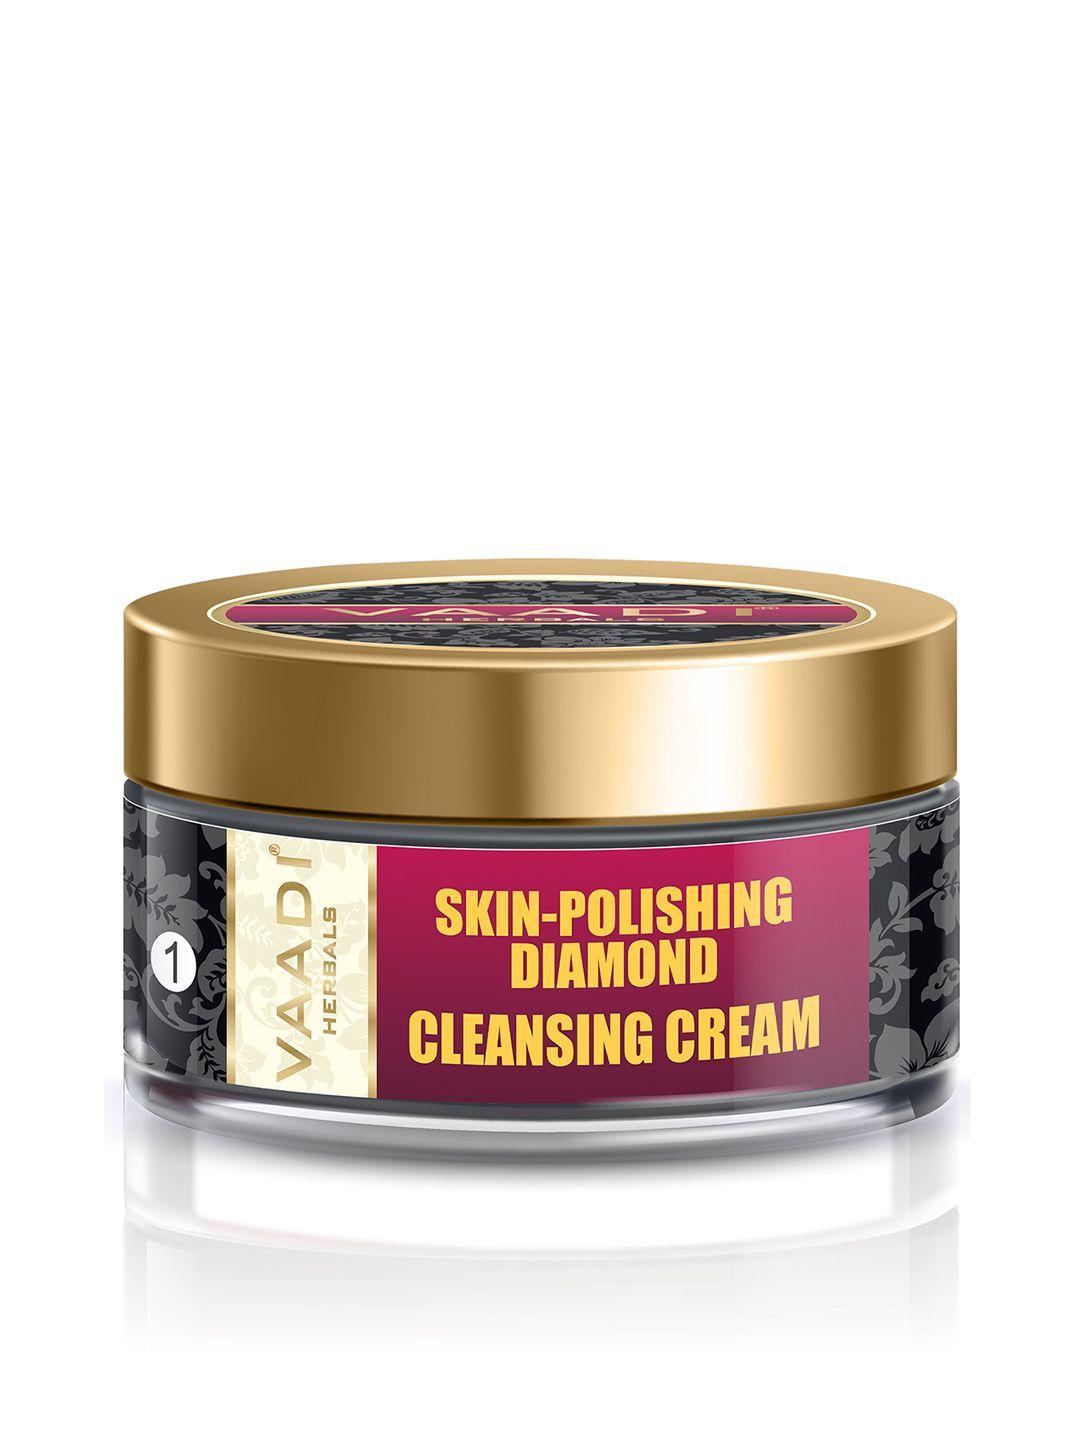 vaadi herbals unisex skin-polishing diamond cleansing cream 50g